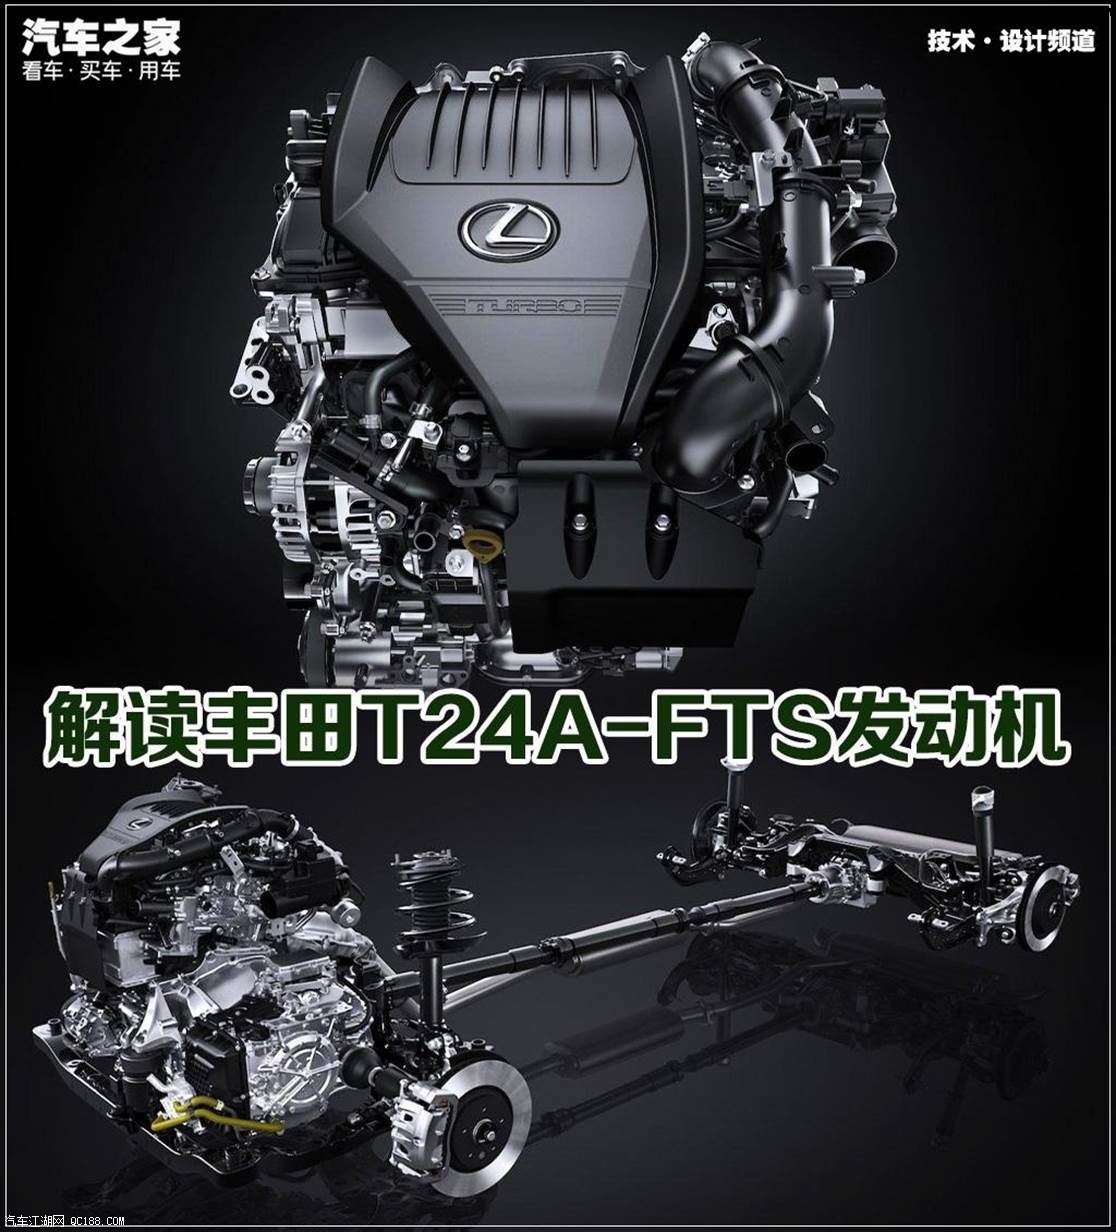 最后那份执着 丰田T24A-FTS发动机解析